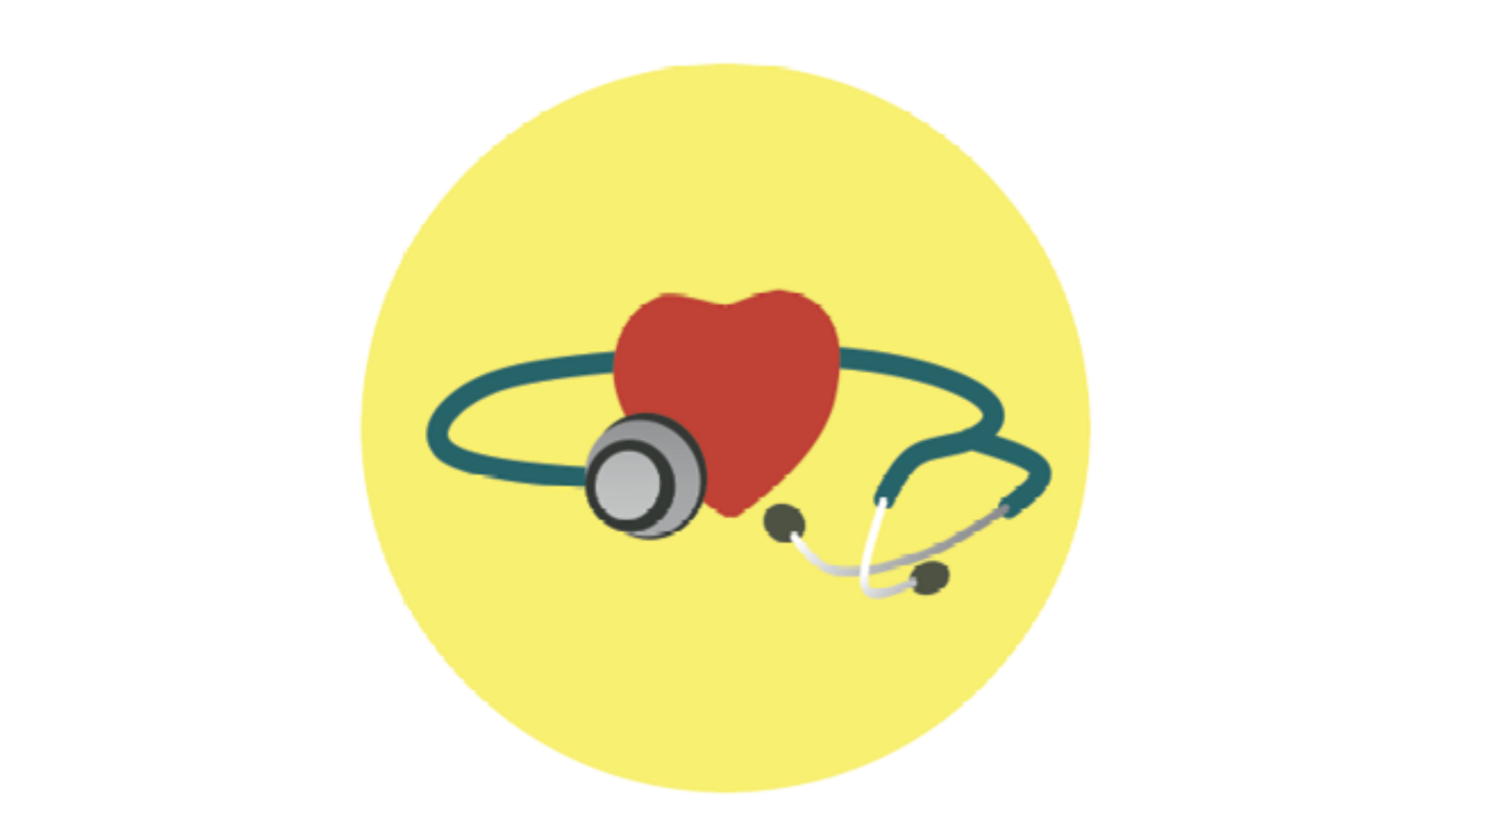 Illustratie (kleur) hart met stethoscoop